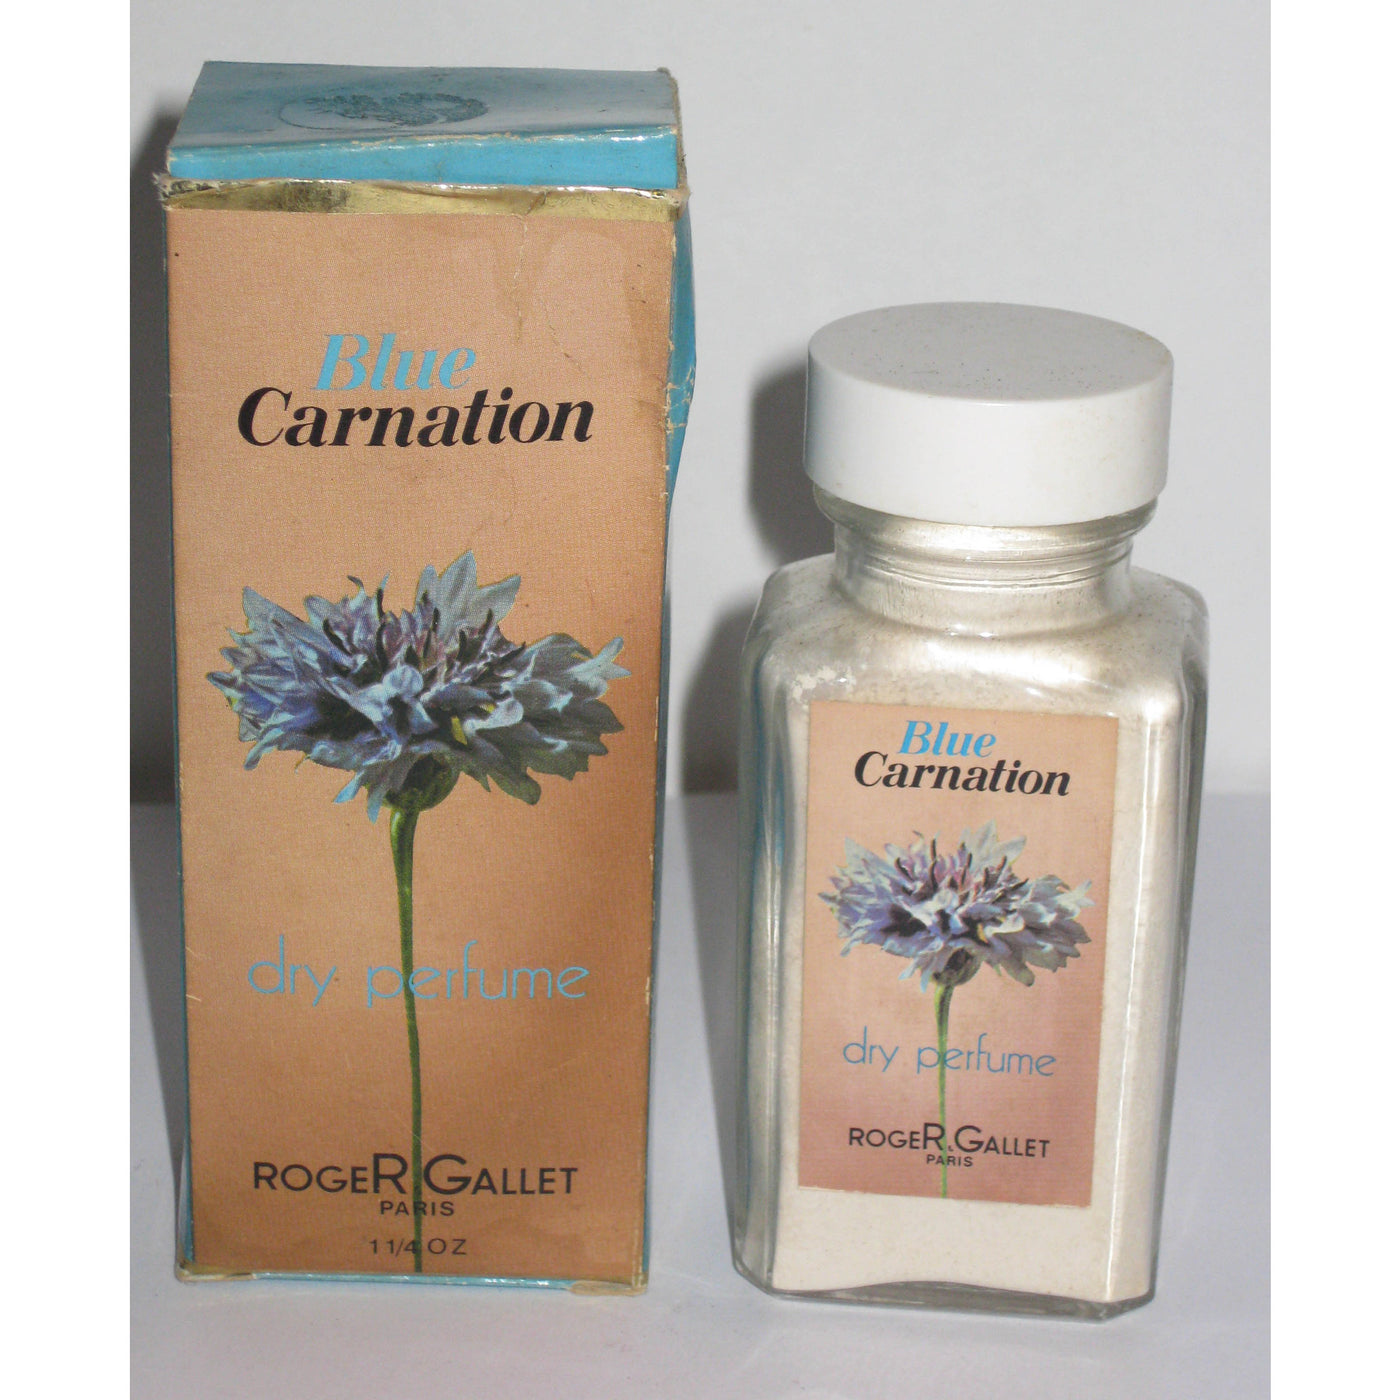 Vintage Roger & Gallet Blue Carnation Dry Perfume